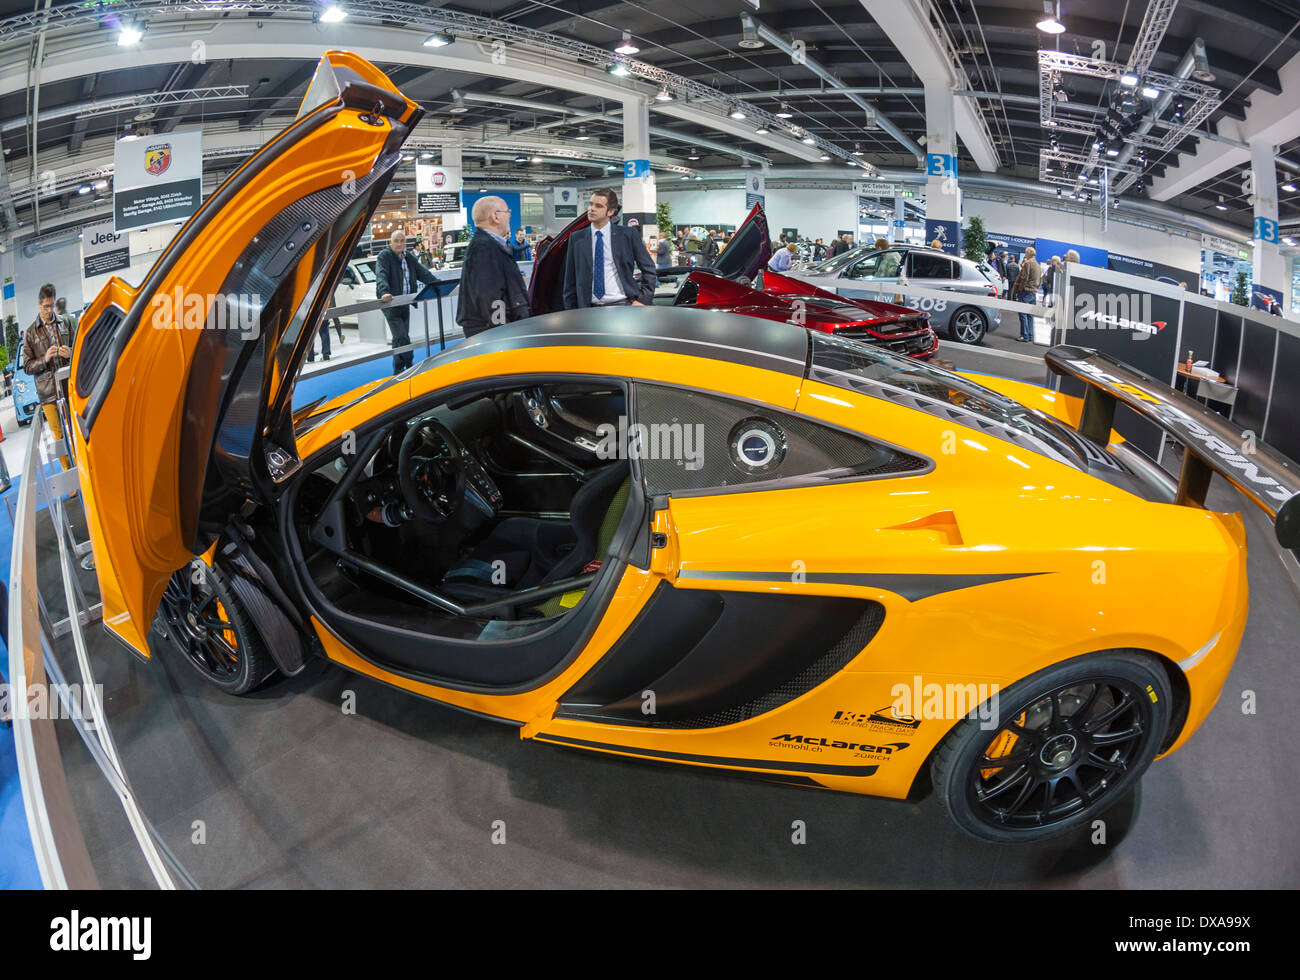 A McLaren luxury sportscar at the Zurich Motor Show in Zurich, Switzerland's largest car exhibition. Stock Photo